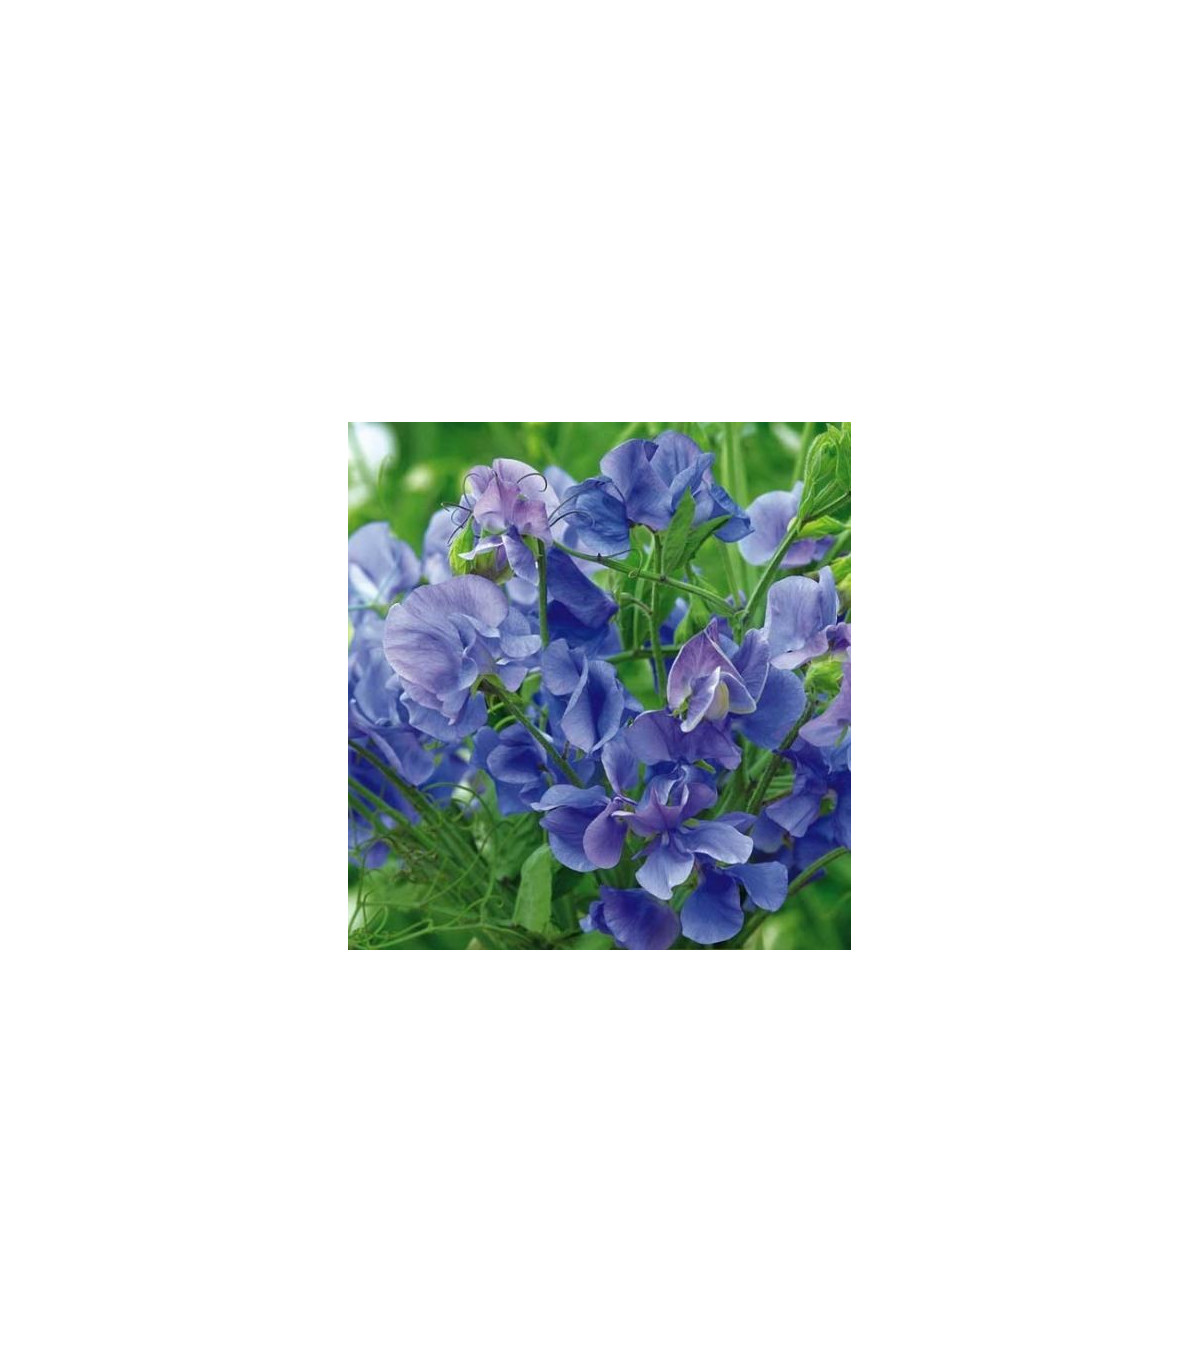 Hrachor pnoucí královský modrý - Lathyrus odoratus - prodej semen - 20 ks